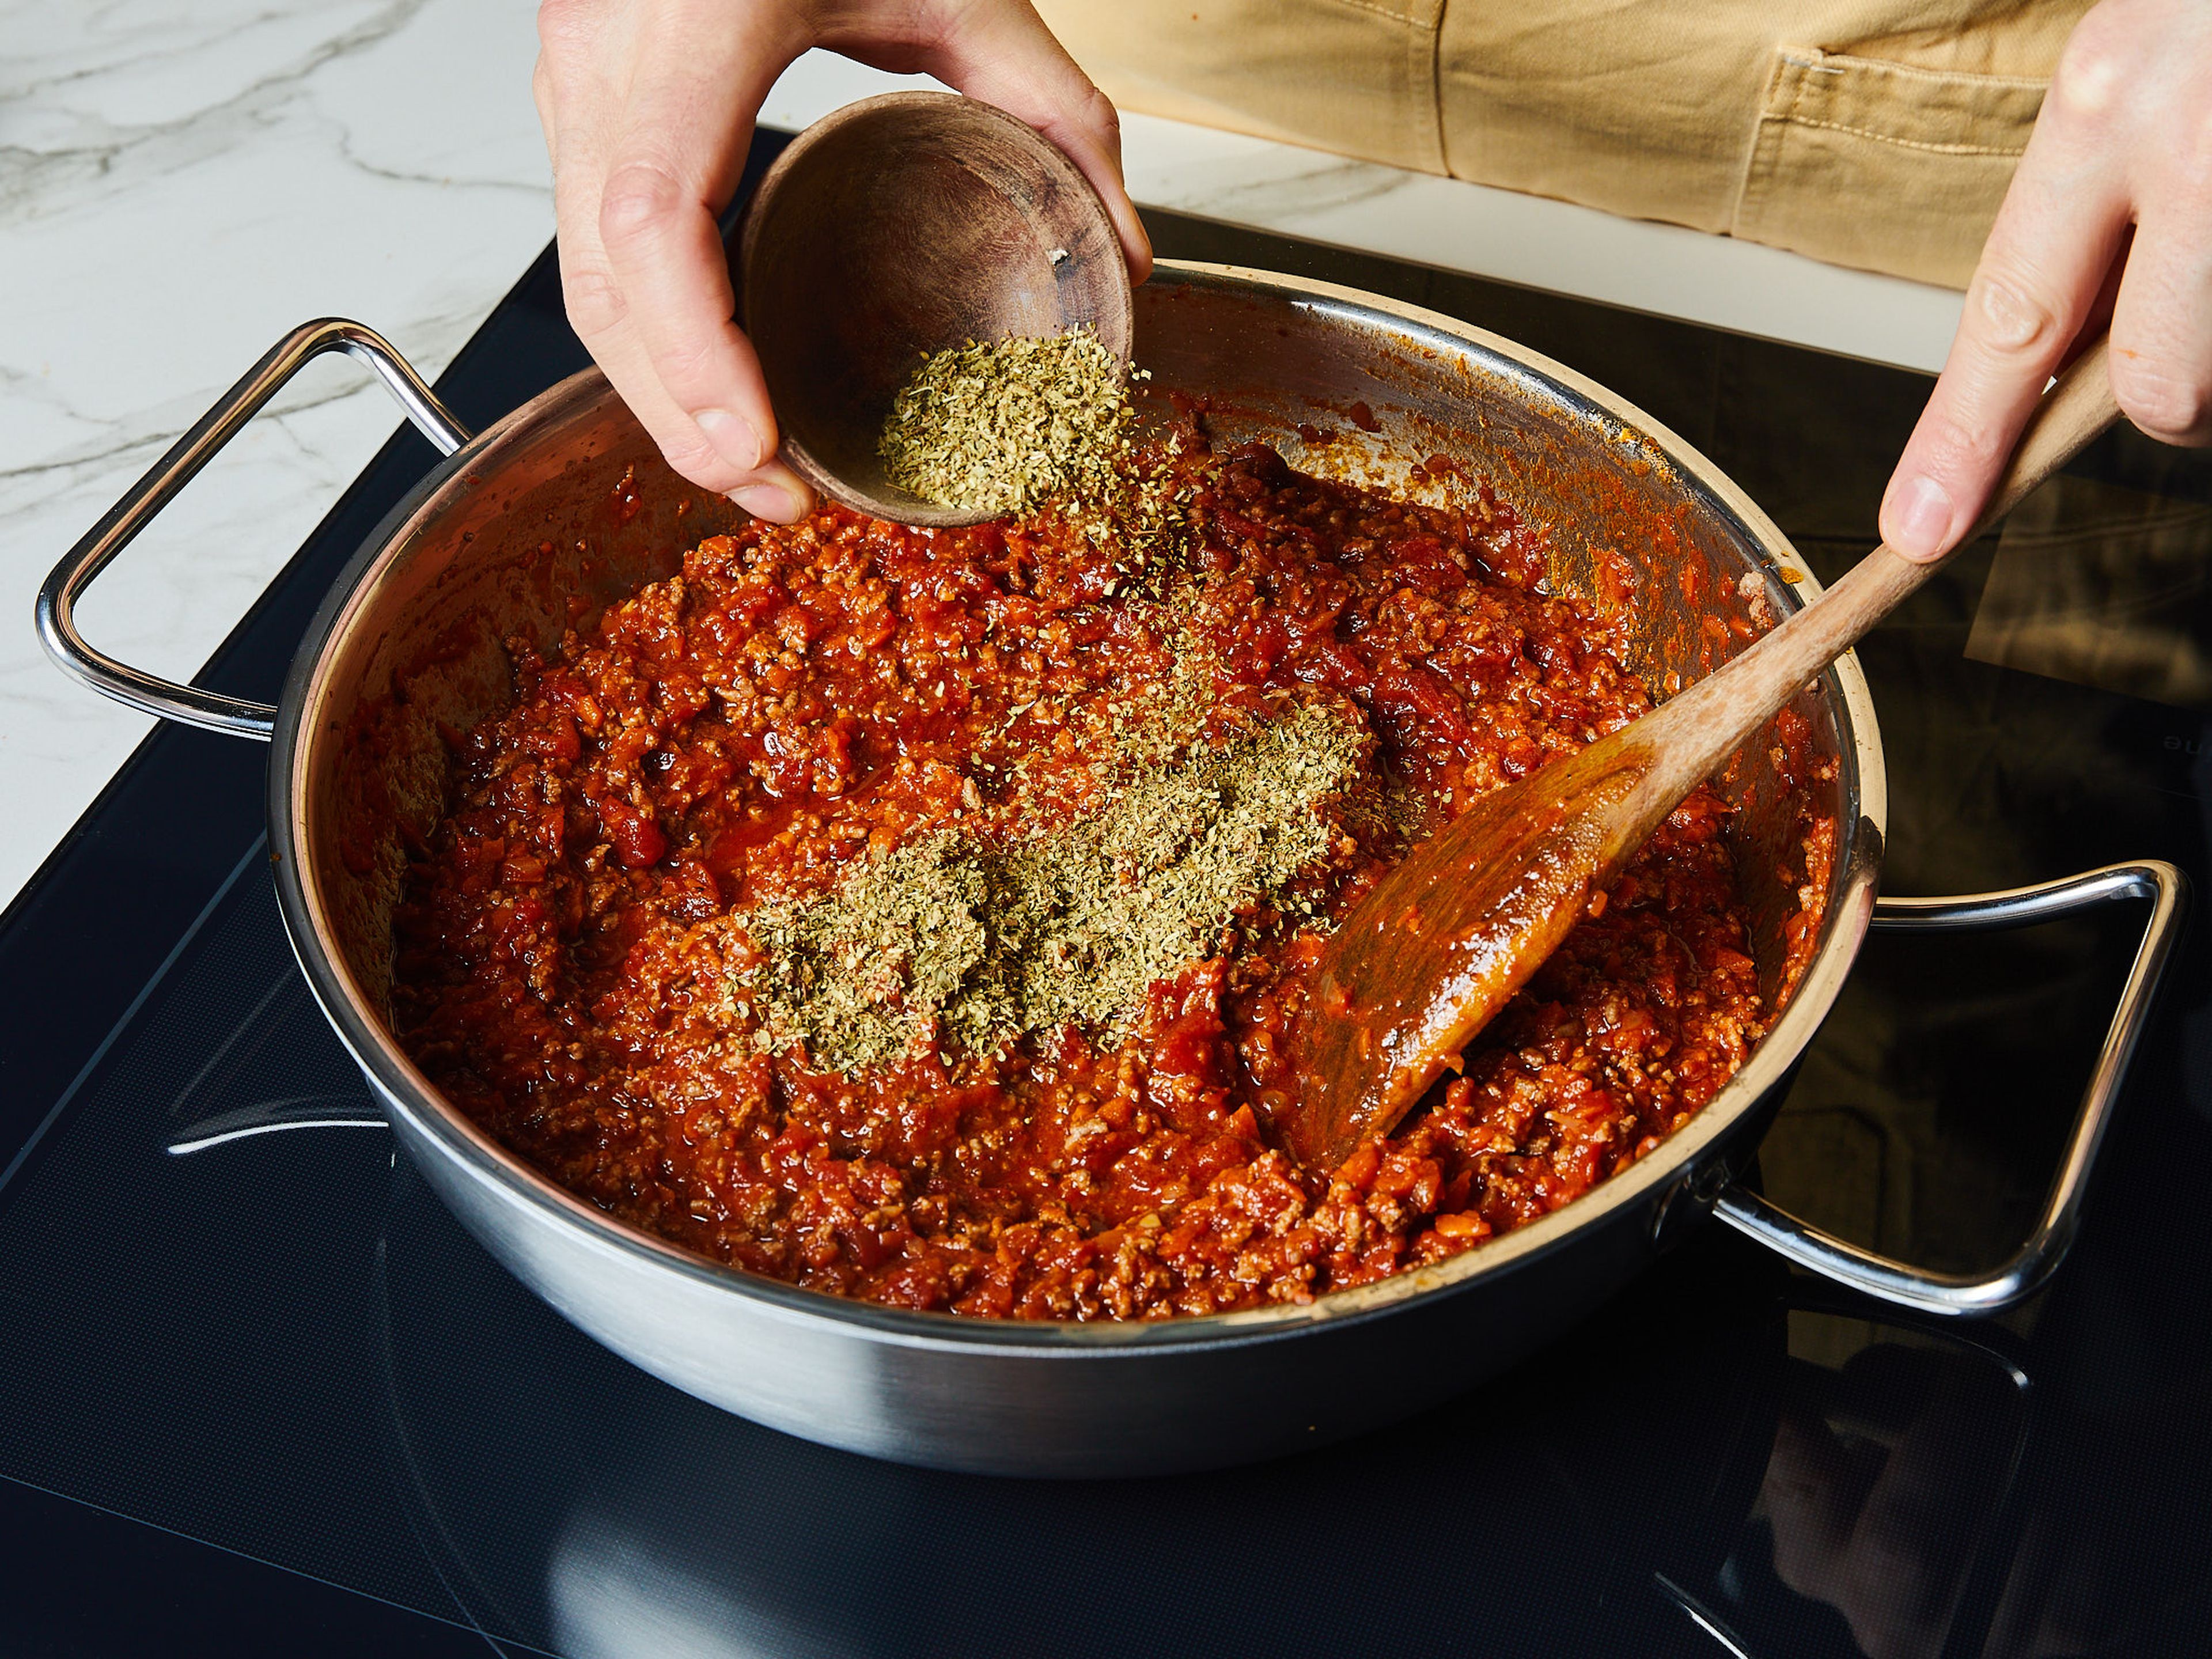 Für das Lasagne Rezept den Knoblauch schälen und fein hacken. Zwiebel und Karotten schälen und würfeln. Etwas Olivenöl in einer großen Pfanne erhitzen und die Zwiebeln, Karotten und den Knoblauch darin anbraten. Das Rinderhackfleisch hinzugeben, gleichmäßig anbraten und dabei mit einem Holzlöffel zerkleinern. Mit Salz und Pfeffer abschmecken. Dann die gehackten Tomaten hinzufügen und erneut mit Salz und Pfeffer würzen. Zugedeckt bei mittlerer Hitze ca. 15-20 Min. köcheln lassen. Dann den getrockneten Oregano einrühren.